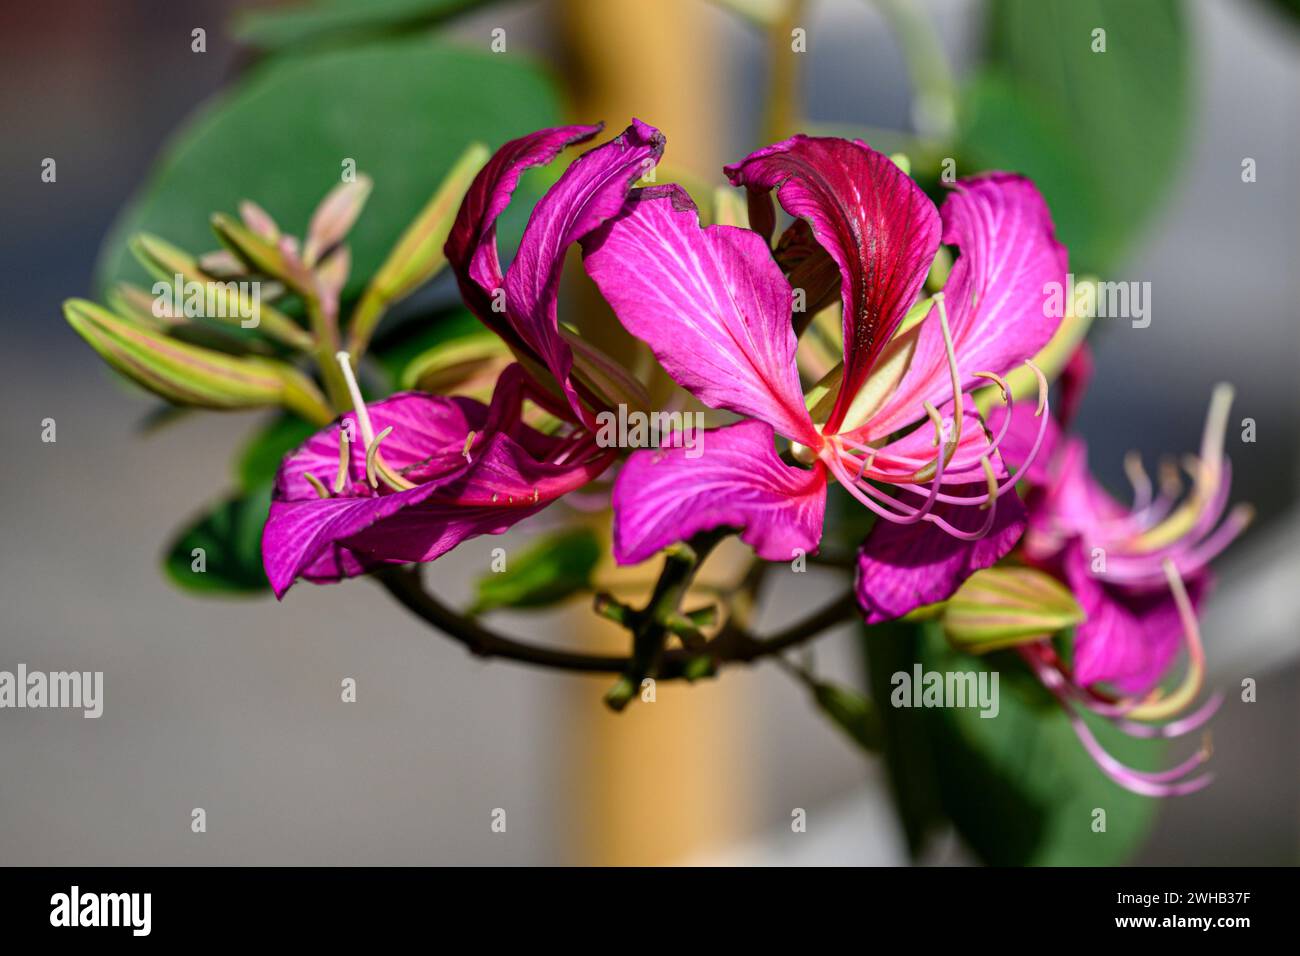 Bauhinia variegata est une espèce de plante à fleurs de la famille des légumineuses Fabaceae, les noms communs incluent l'orchidée et l'ébène de montagne Banque D'Images